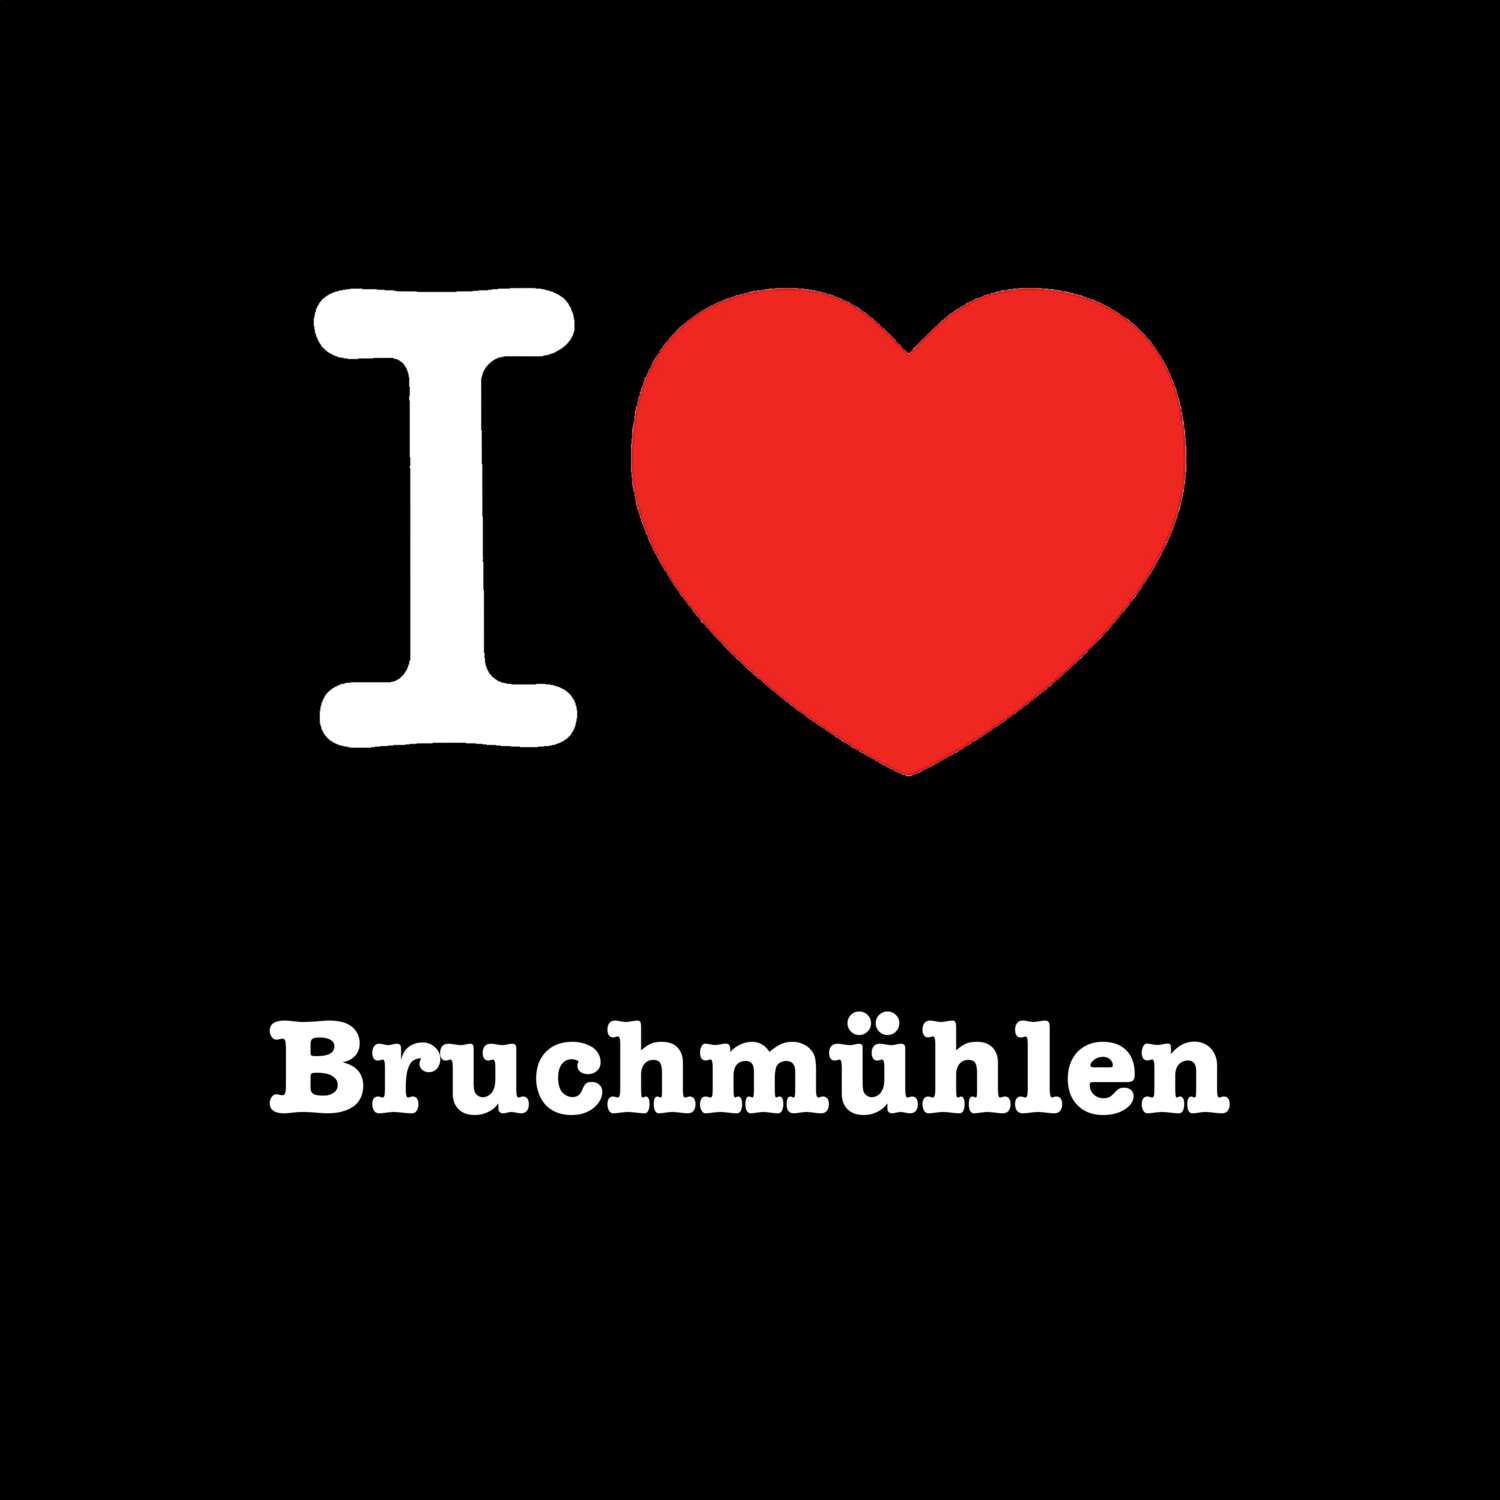 Bruchmühlen T-Shirt »I love«